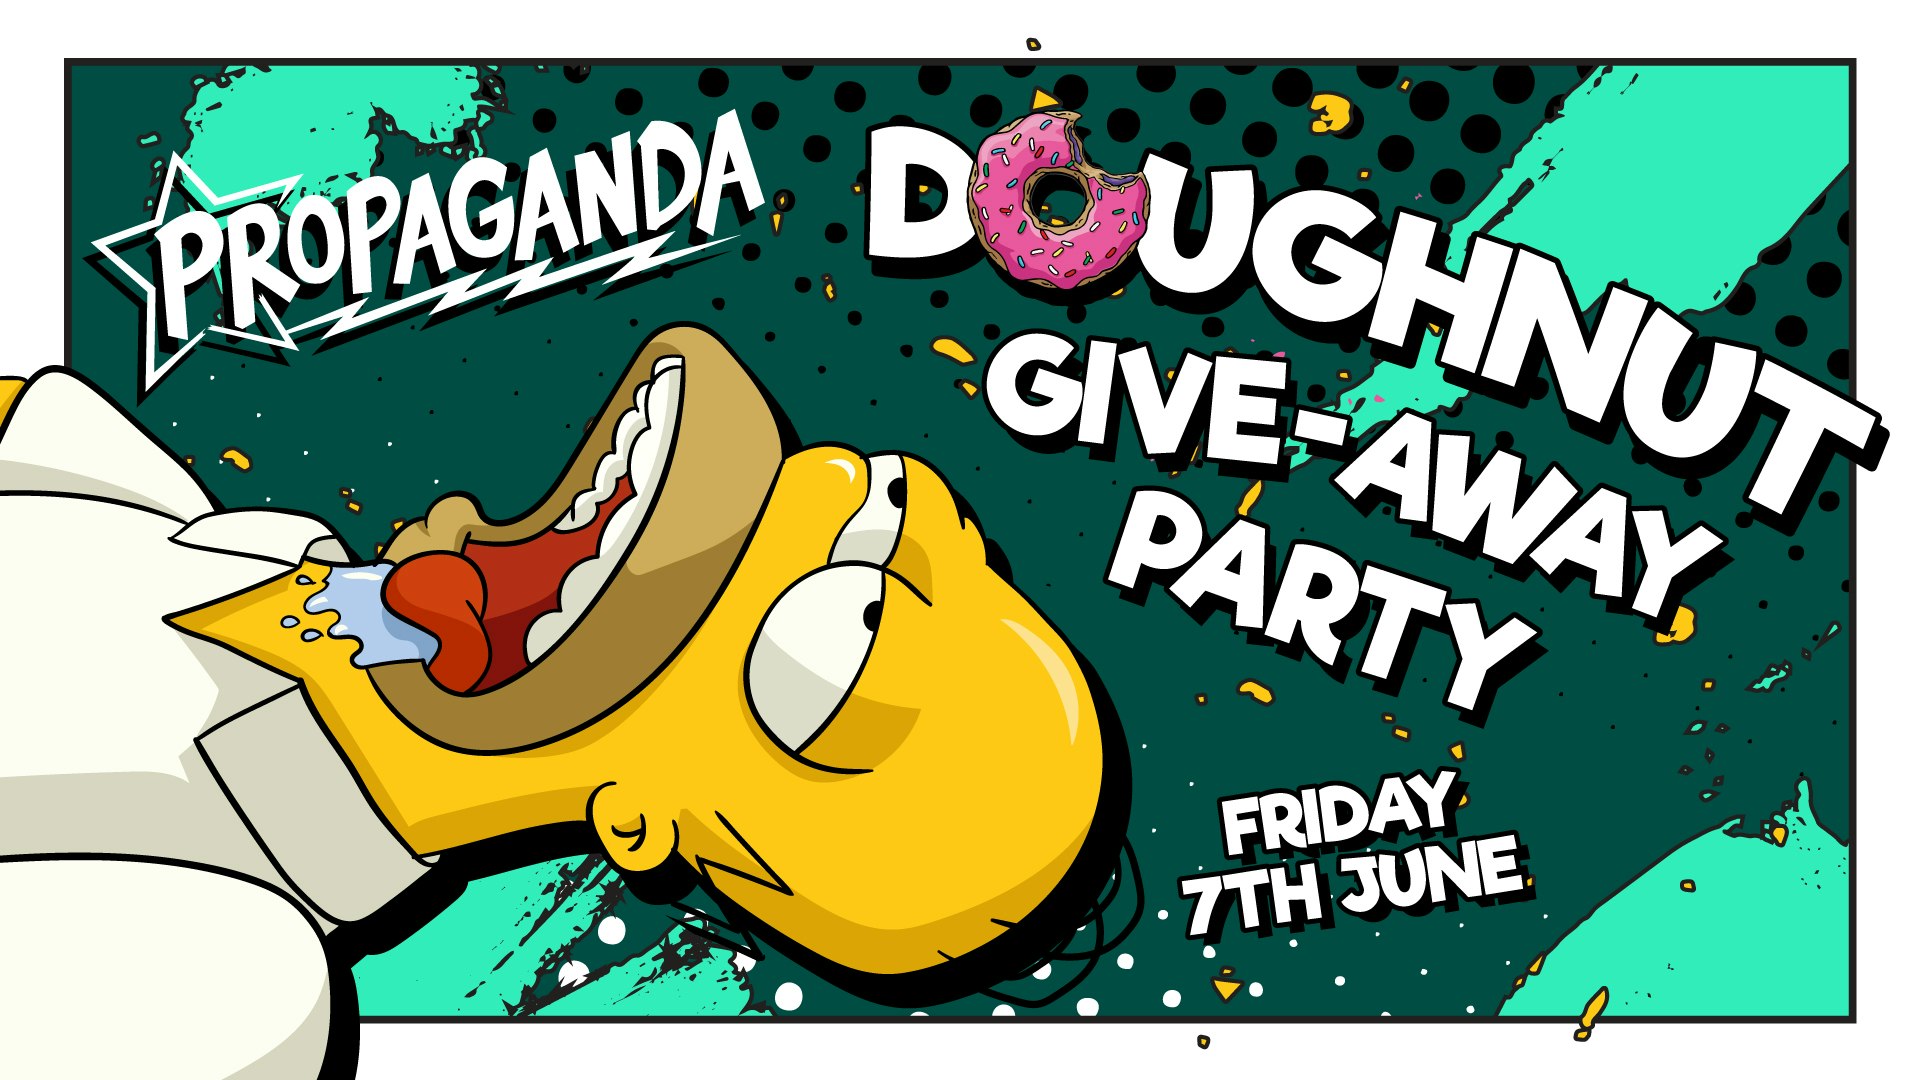 Propaganda Cambridge – Doughnut Party